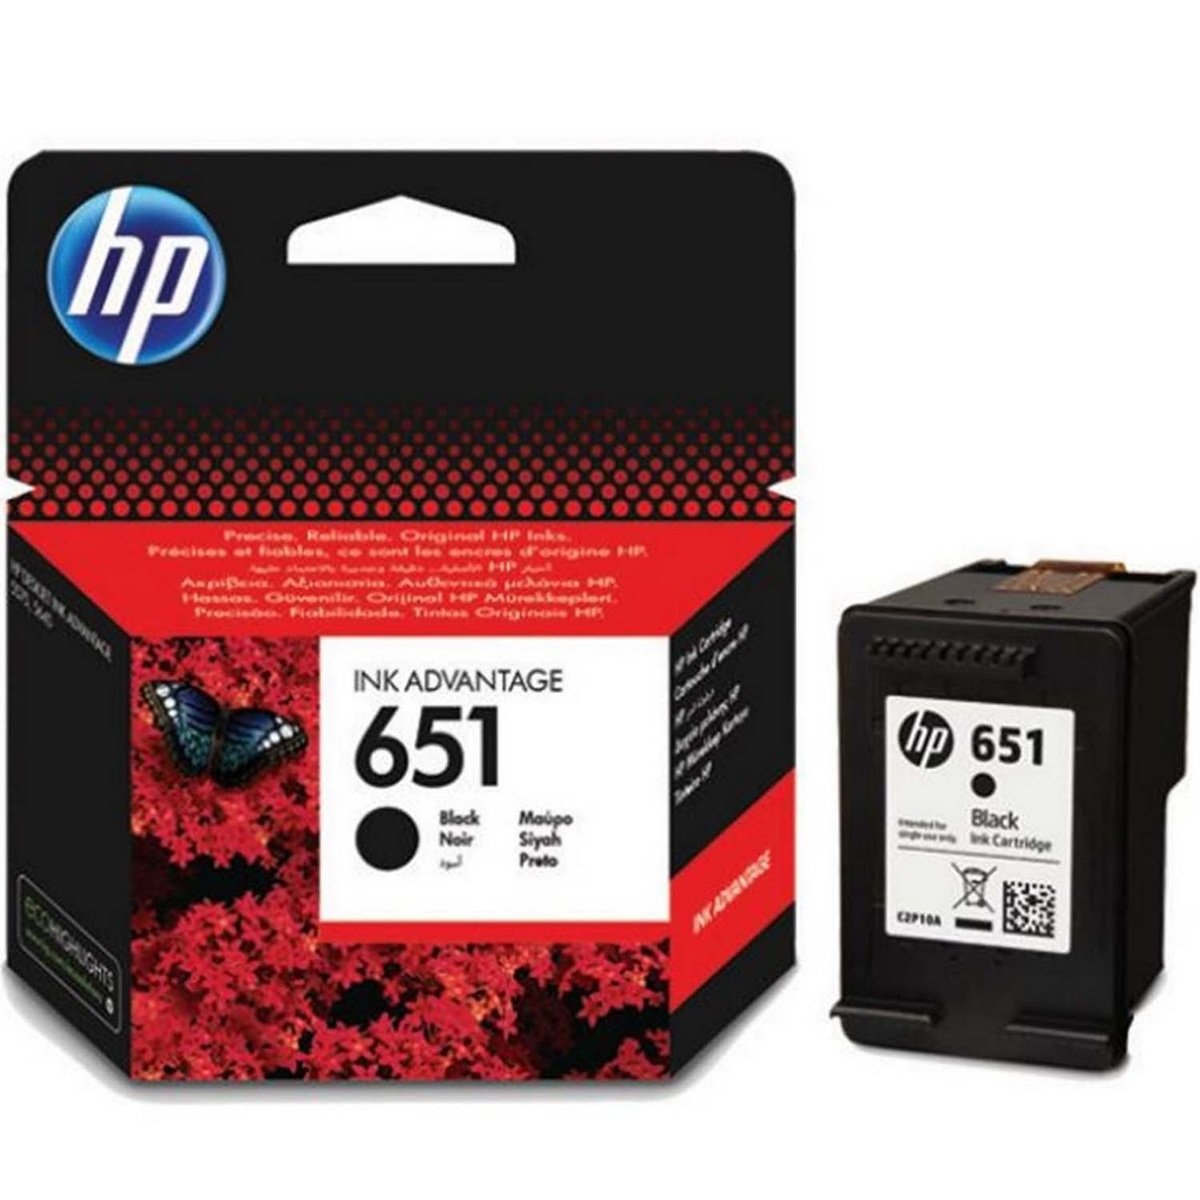 Buy HP 963 Magenta Original Ink Cartridge 3JA24AE Online in UAE